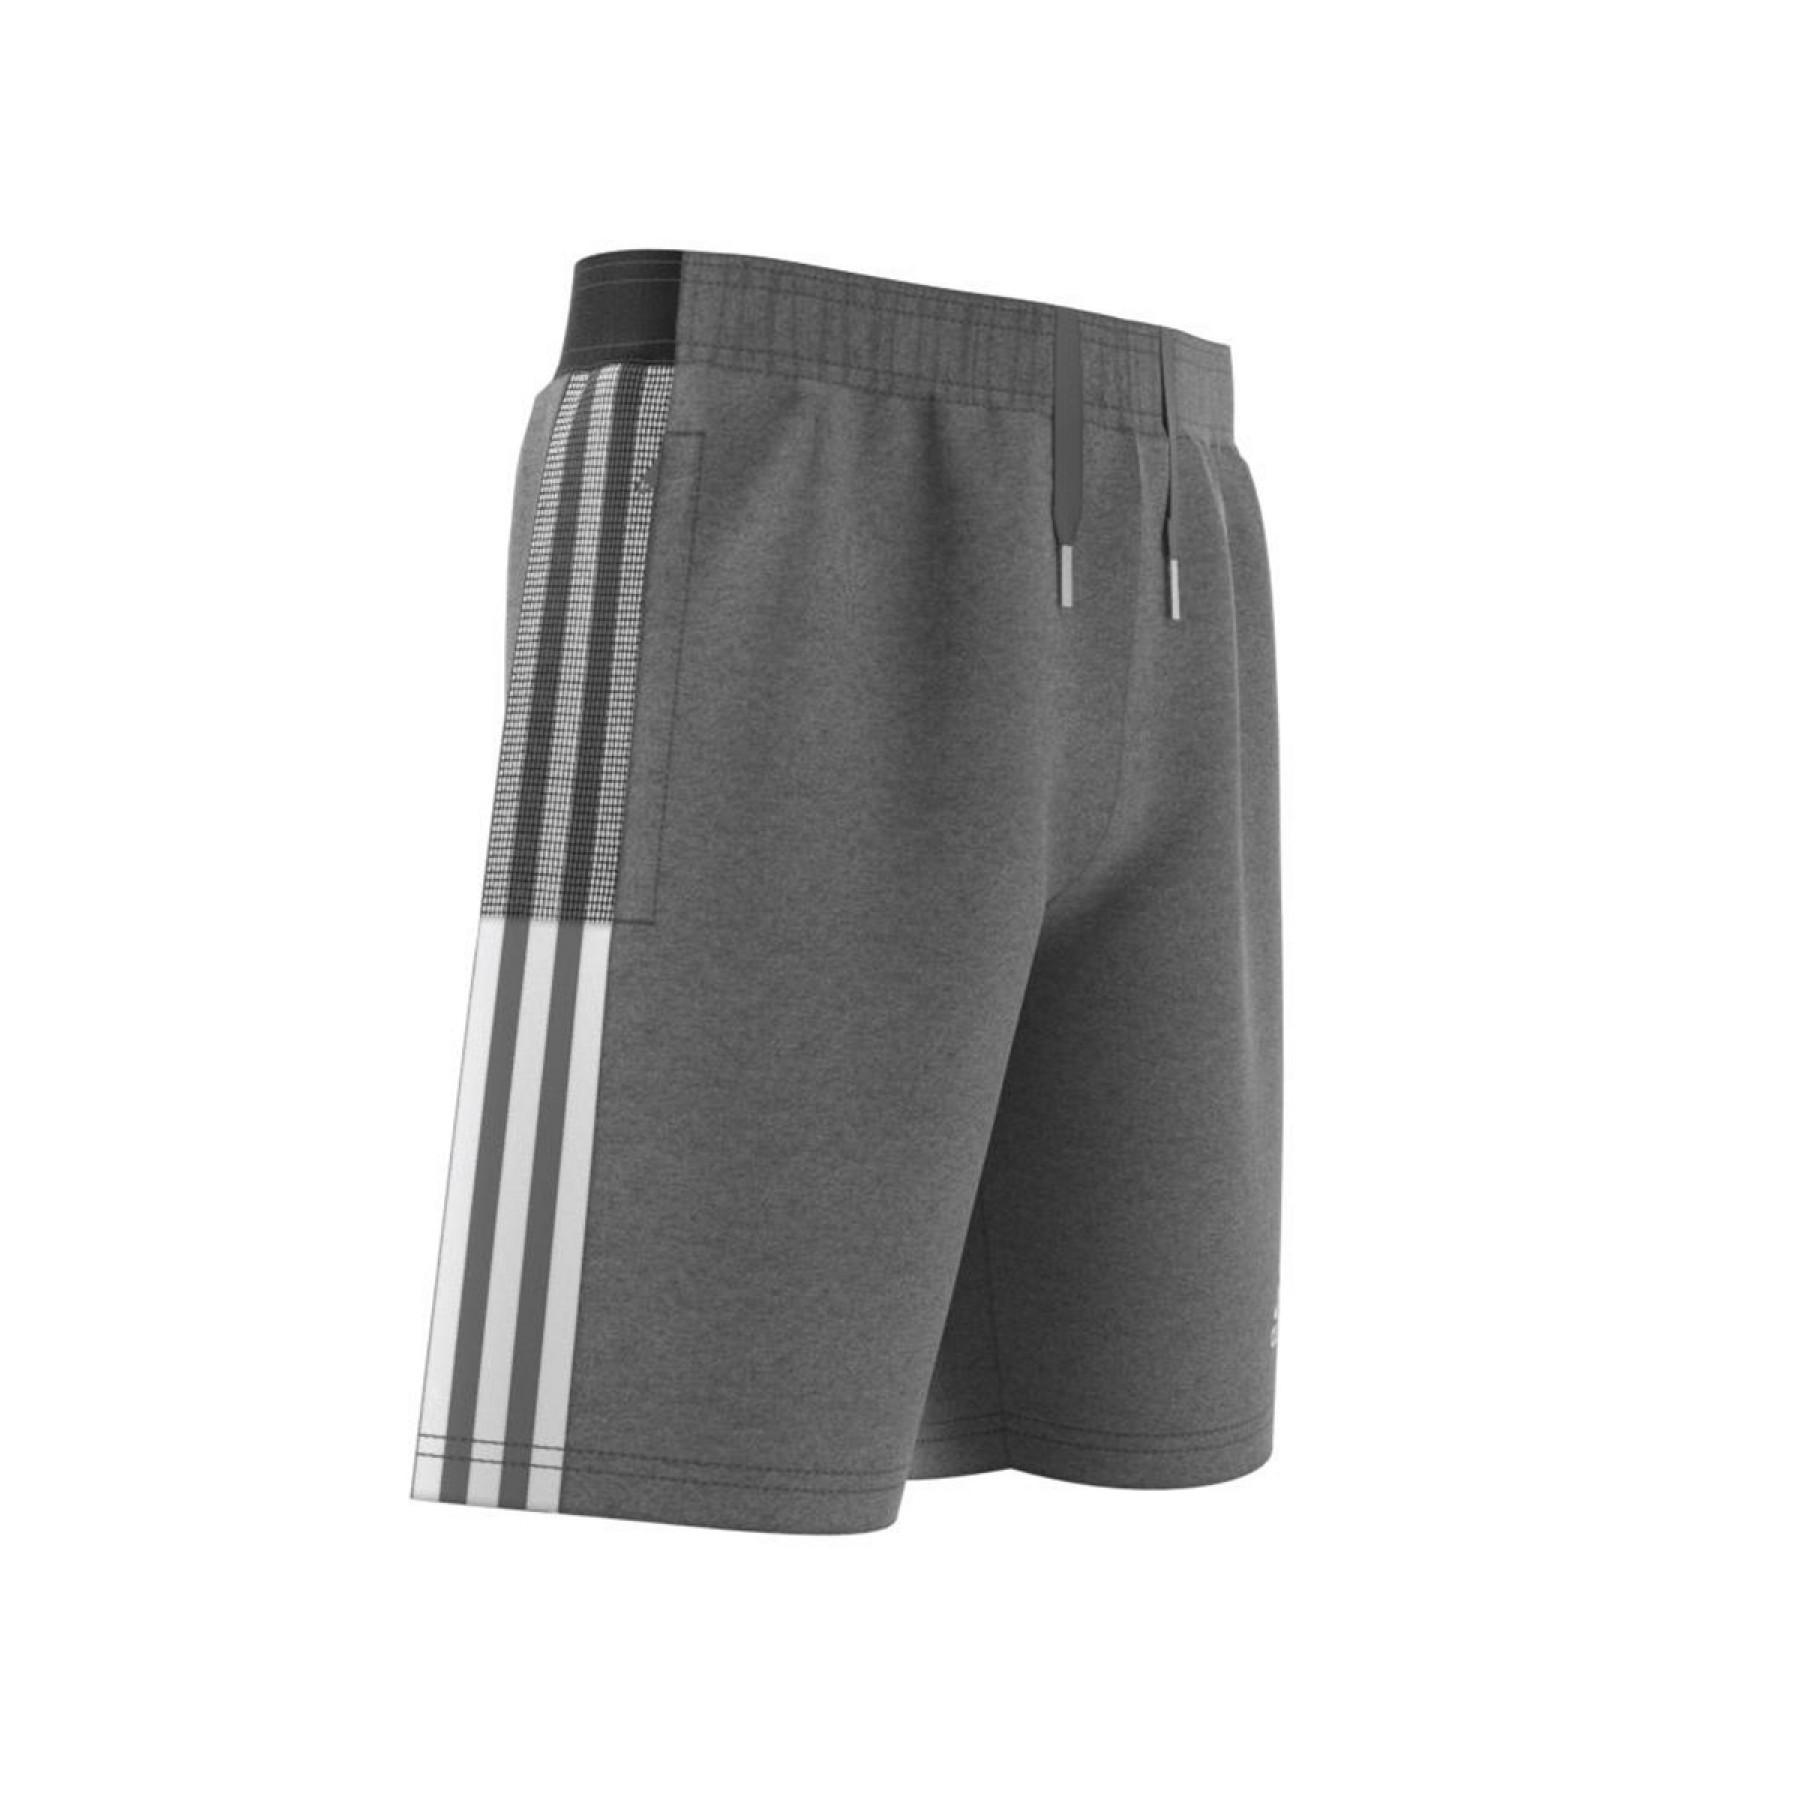 Children's shorts adidas Tiro 21 Sweat